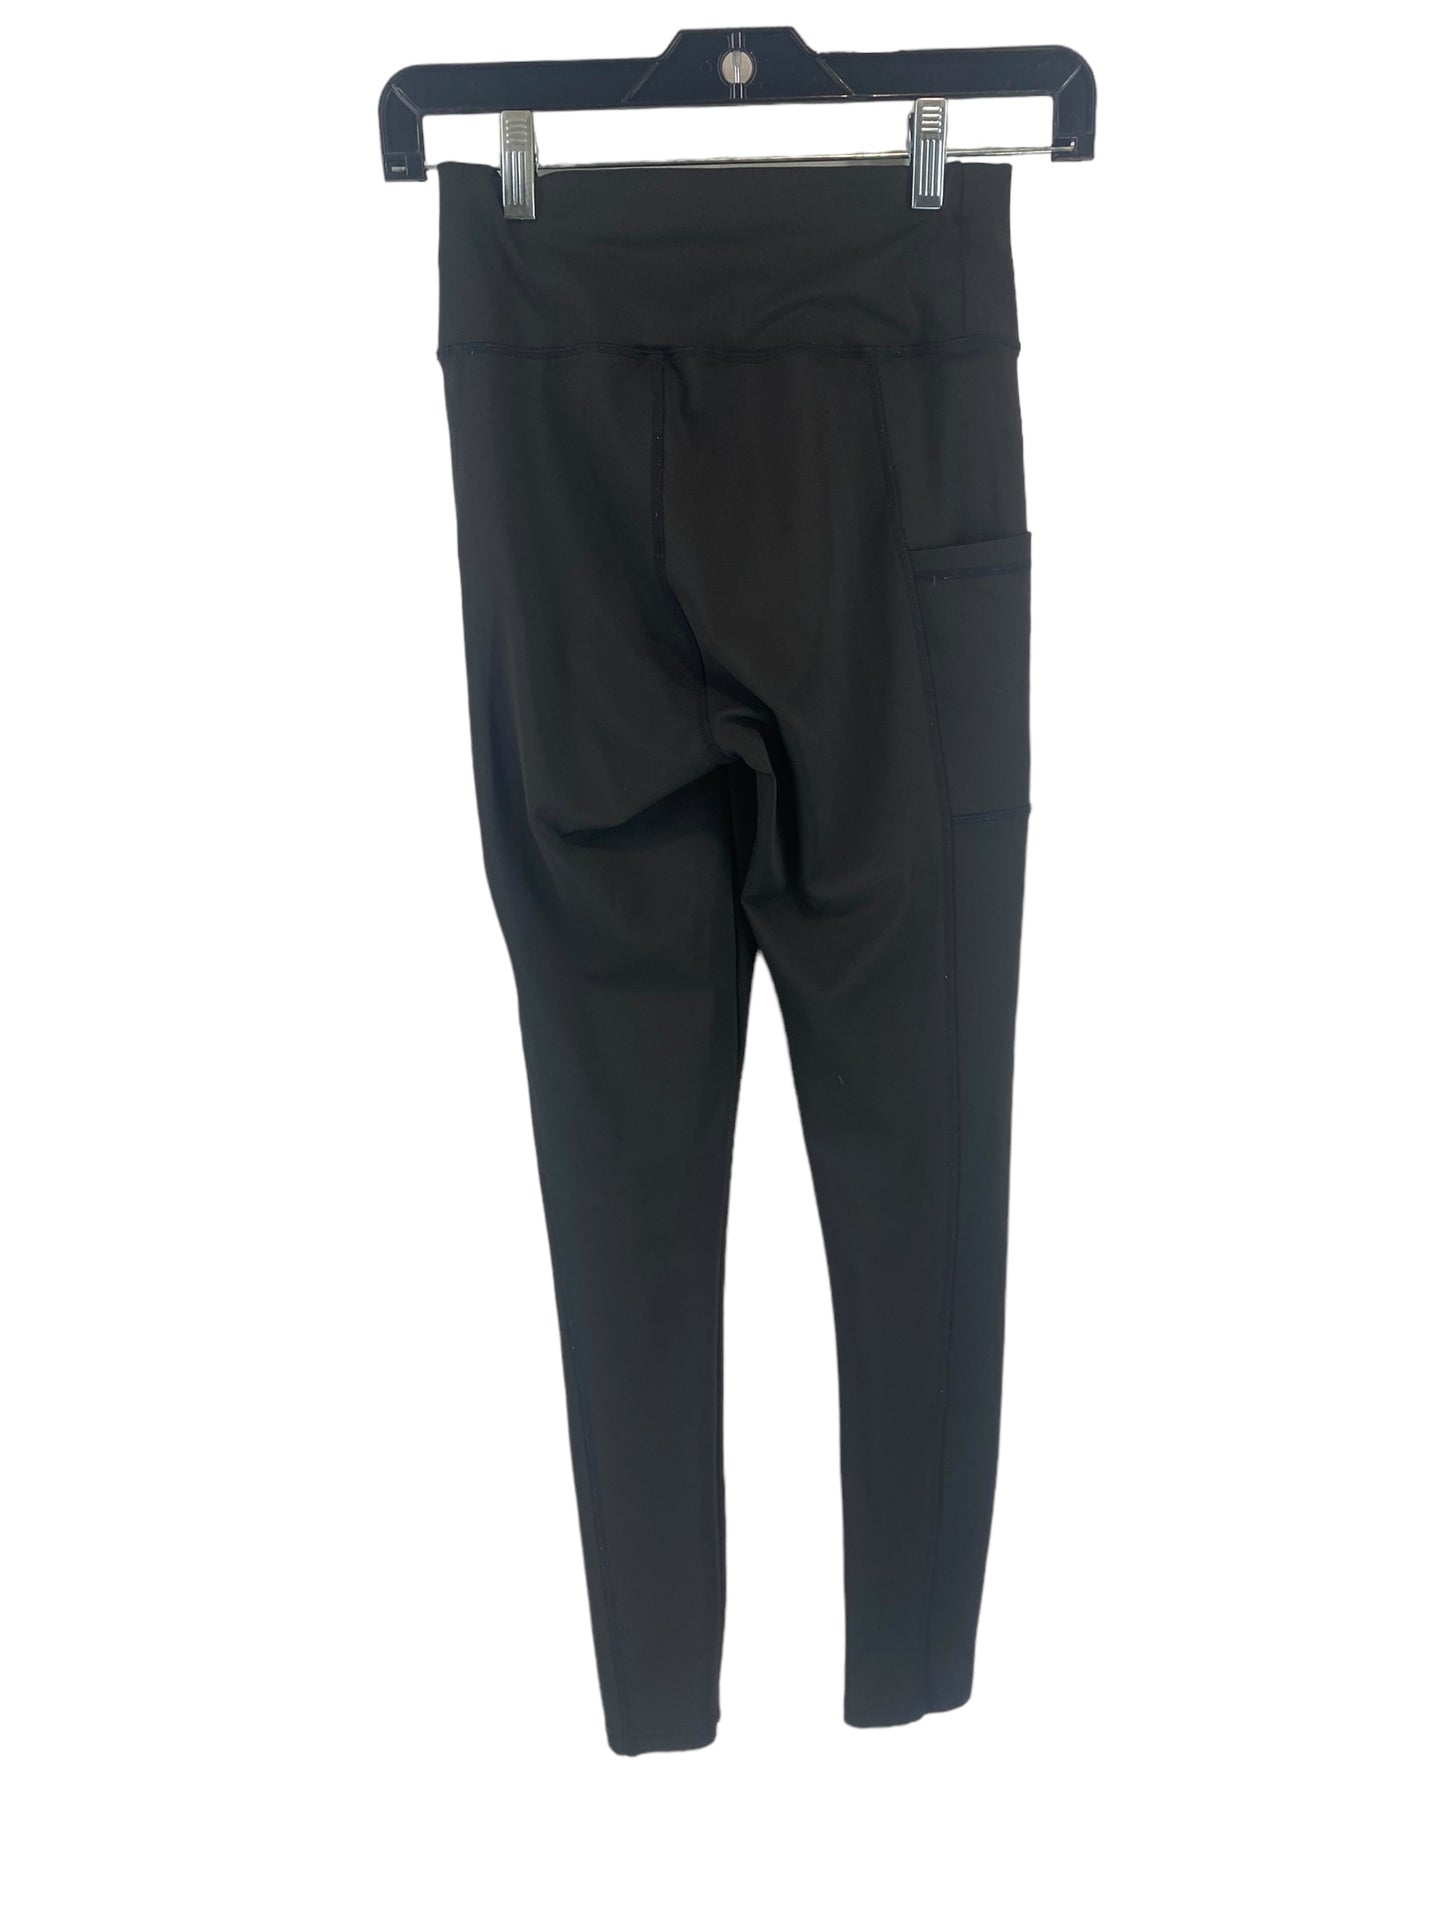 Black Pants Leggings Clothes Mentor, Size S